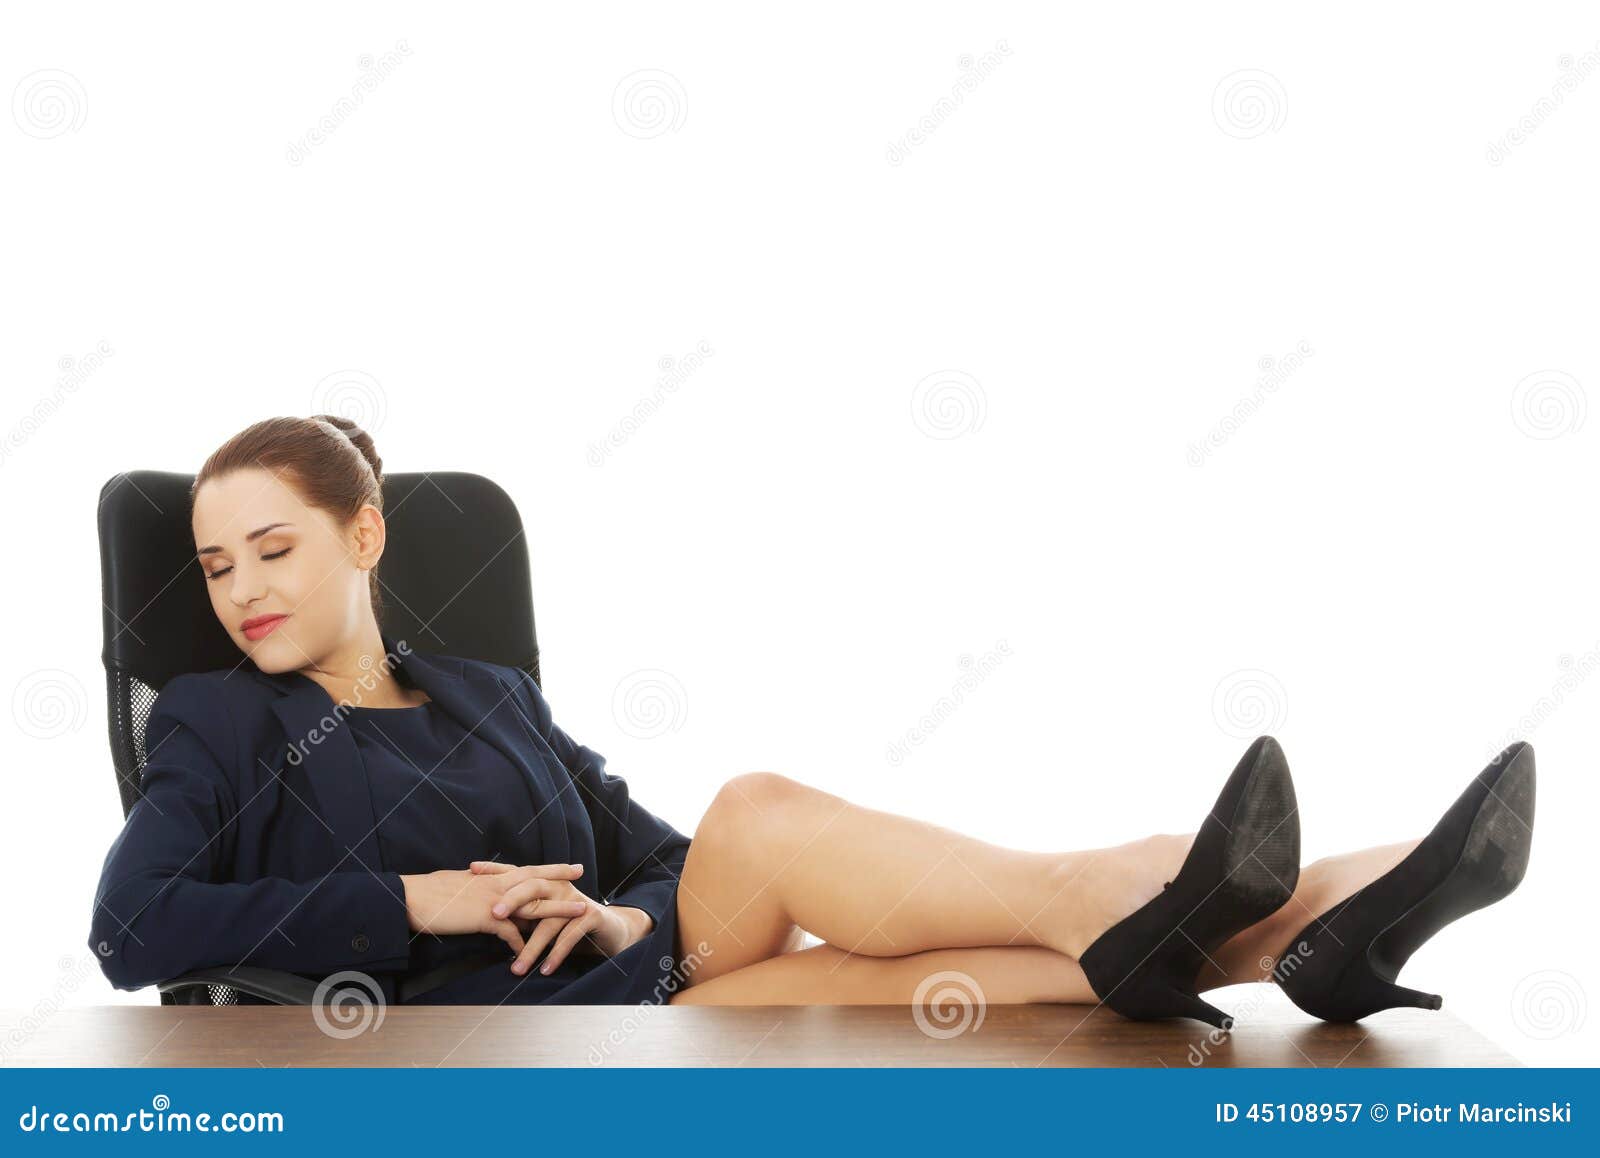 Почему закидывают ногу на ногу. Девушка сидит закинув ноги на стол. Девушка закинула ноги на стол. Девушка положила ногу на ногу. Девушка сидит нога на ногу.